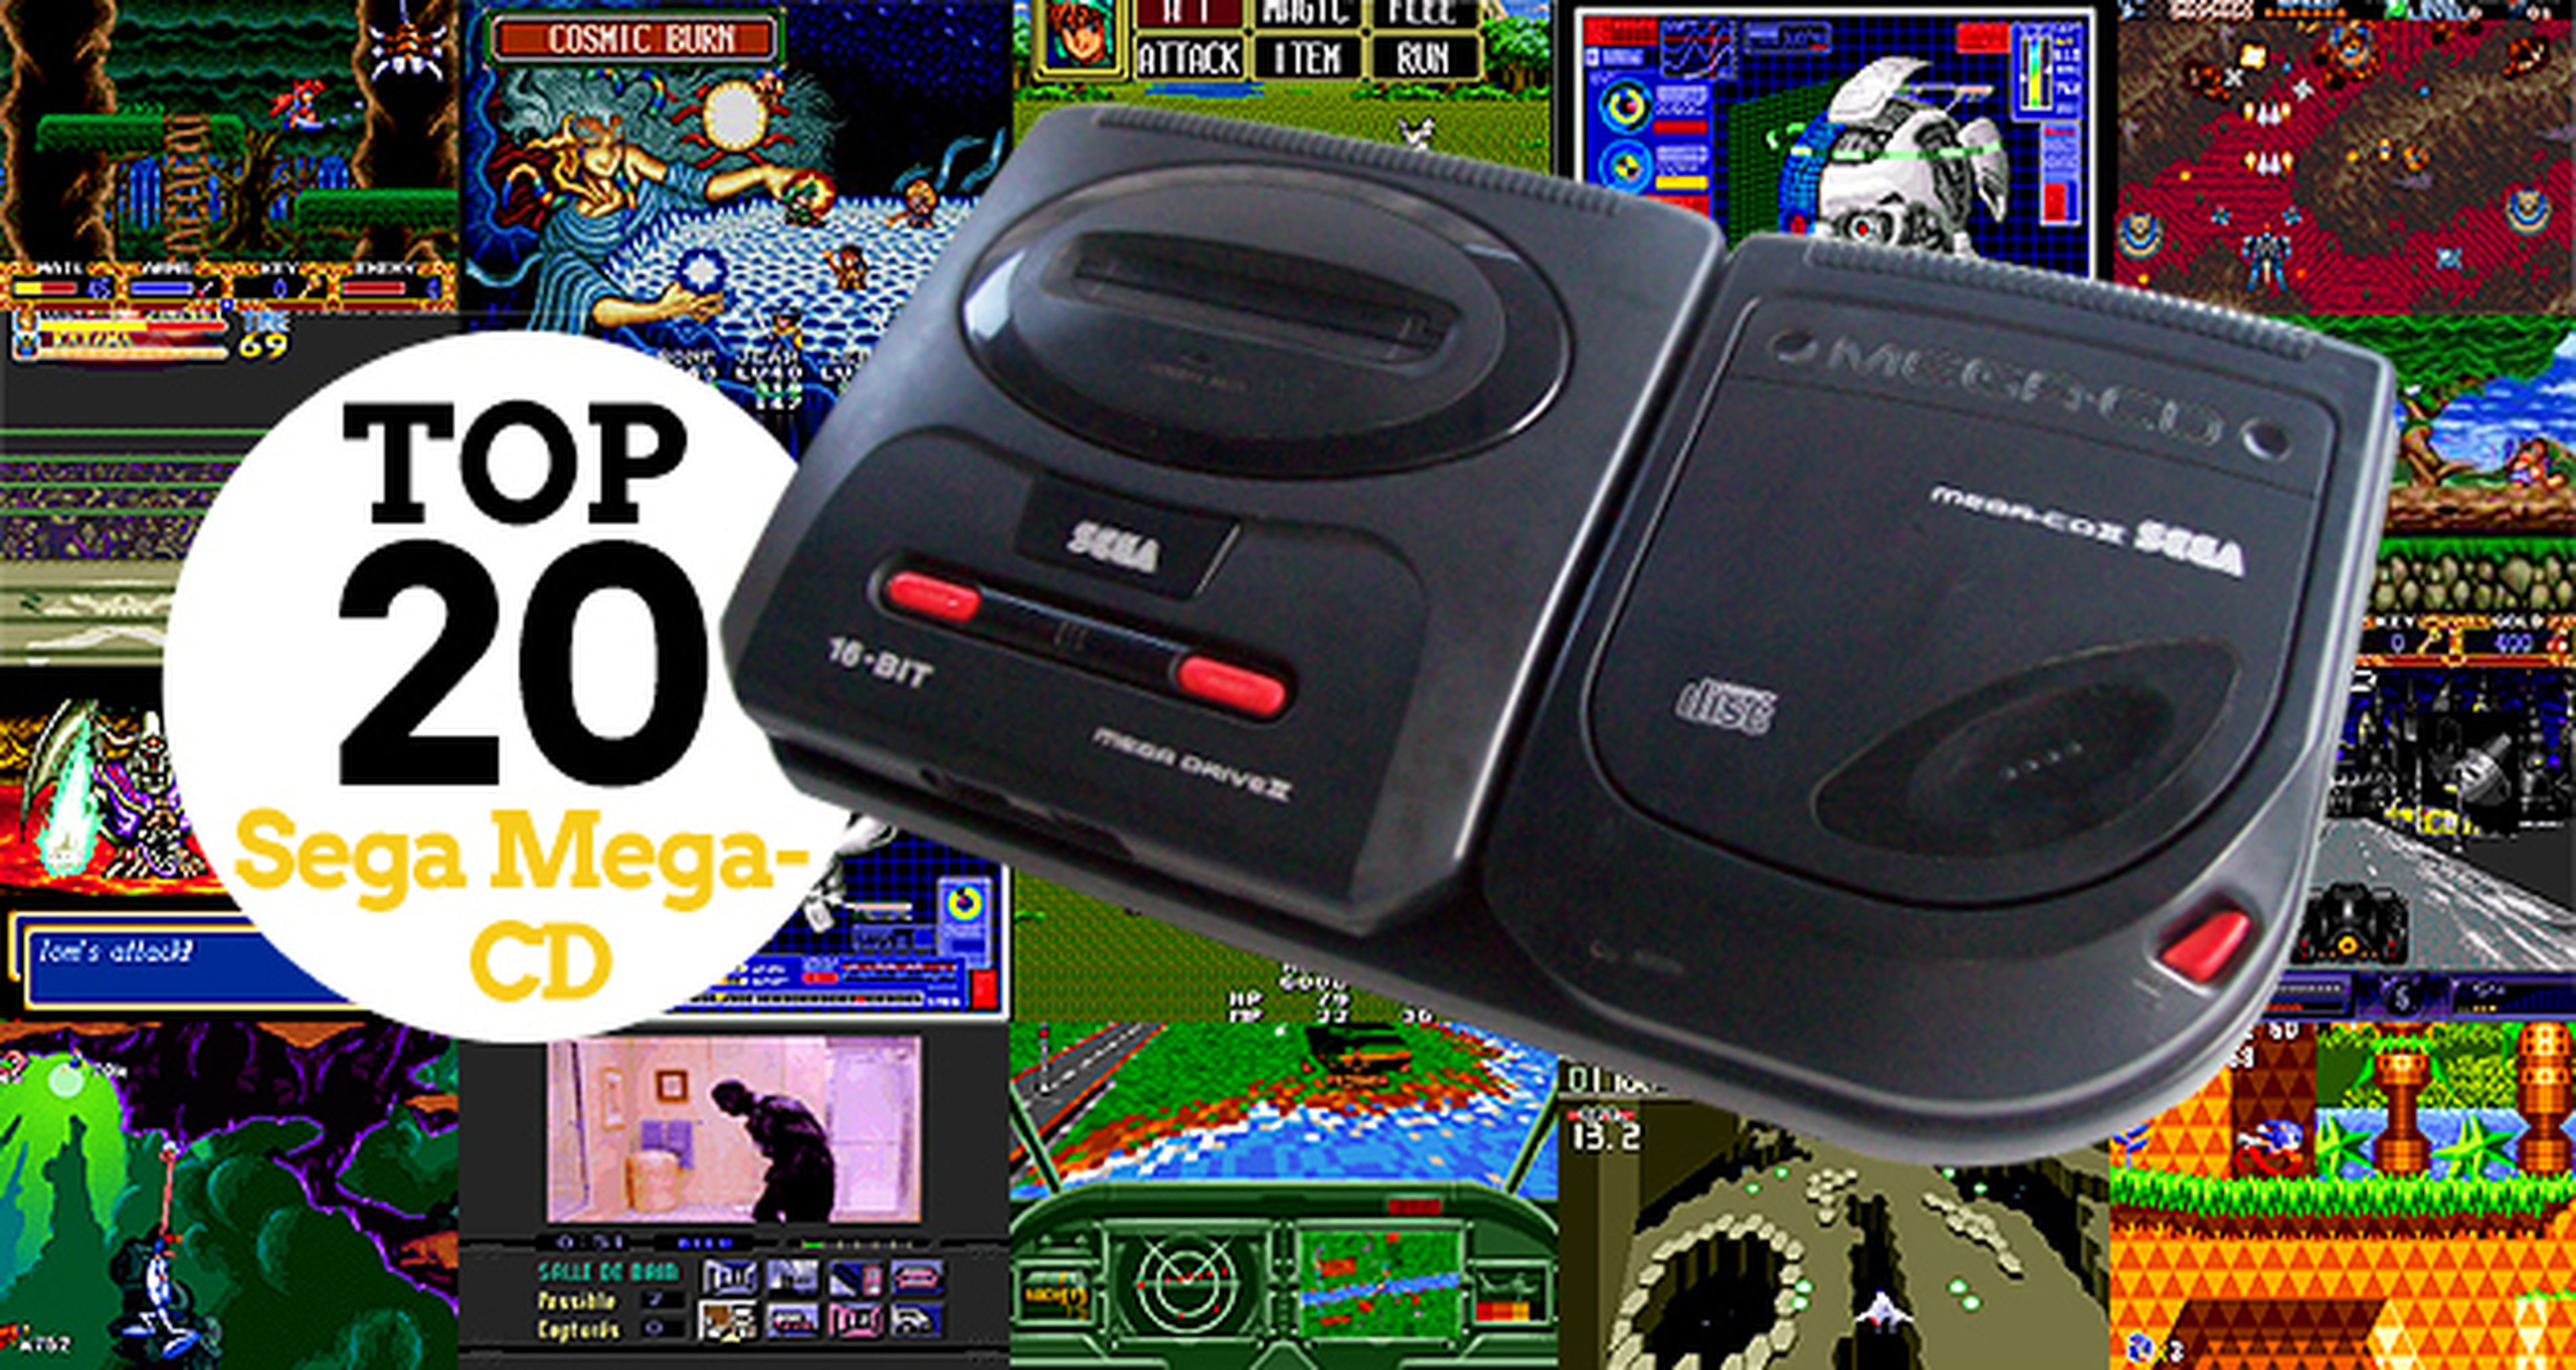 Los 20 mejores juegos de Sega Mega-CD